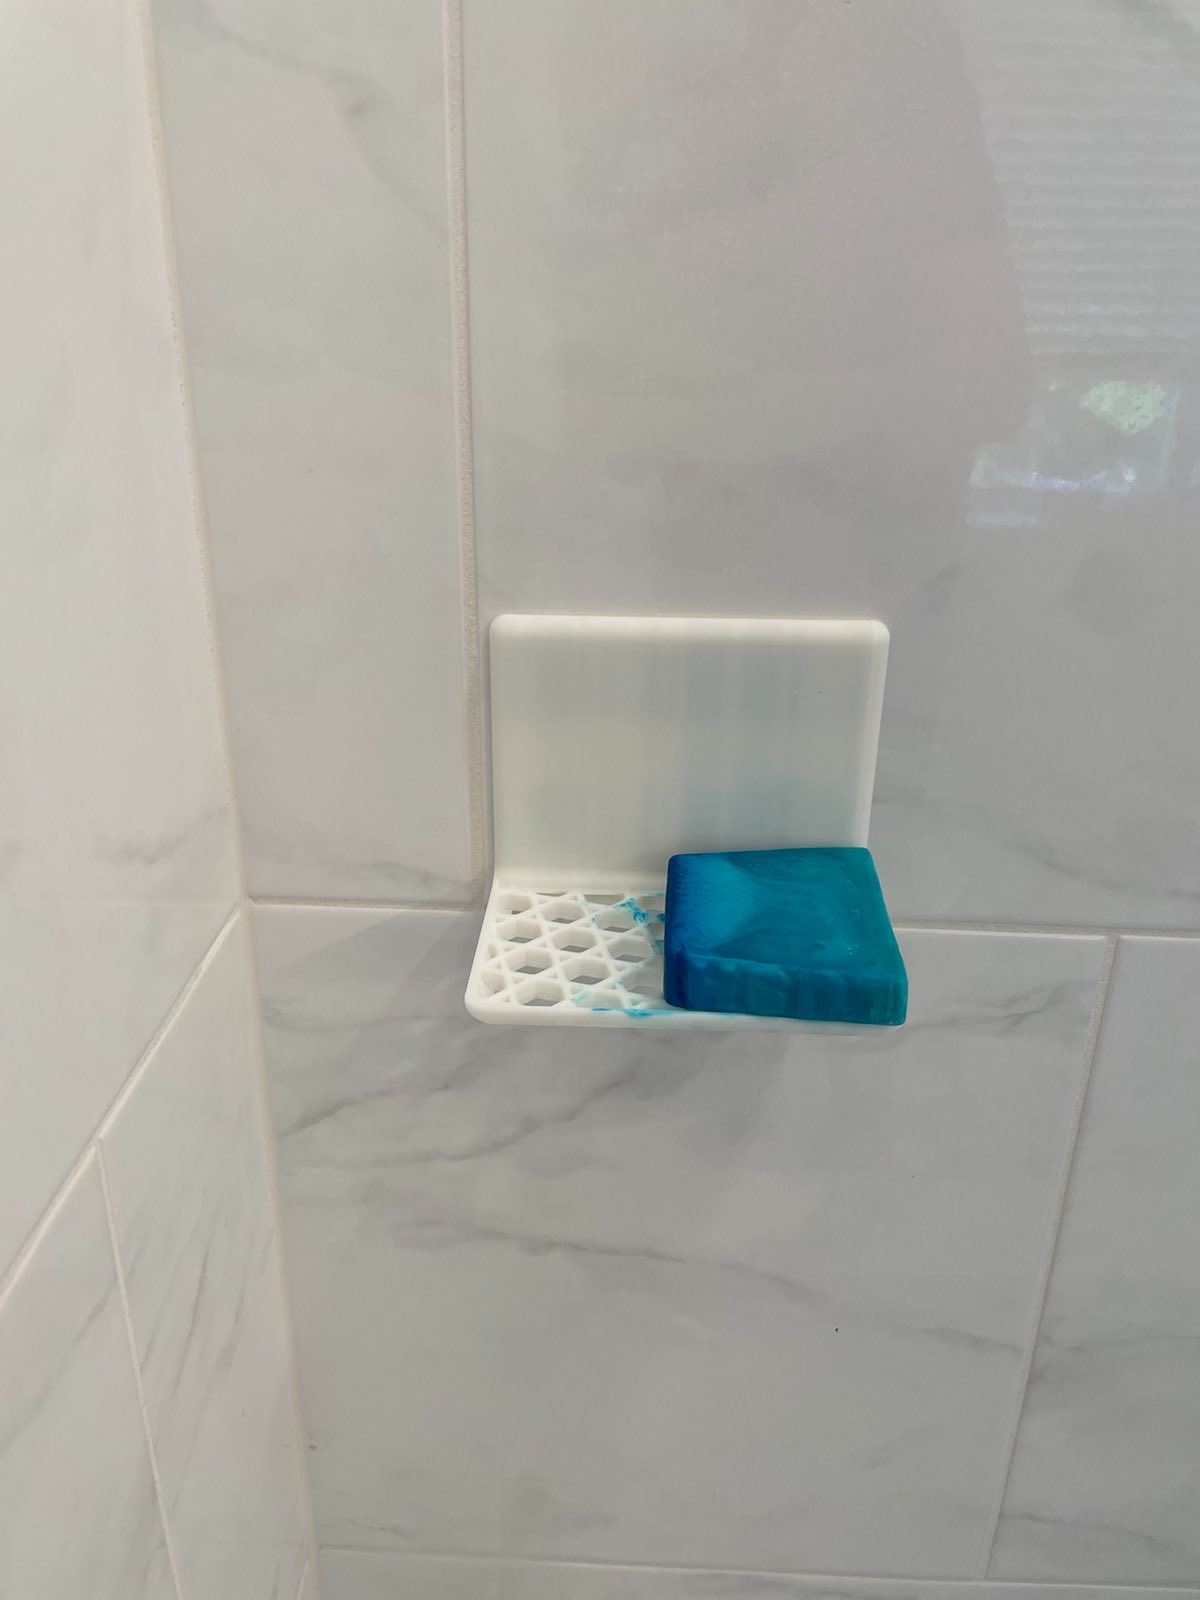 Shower Wall Soap Tray